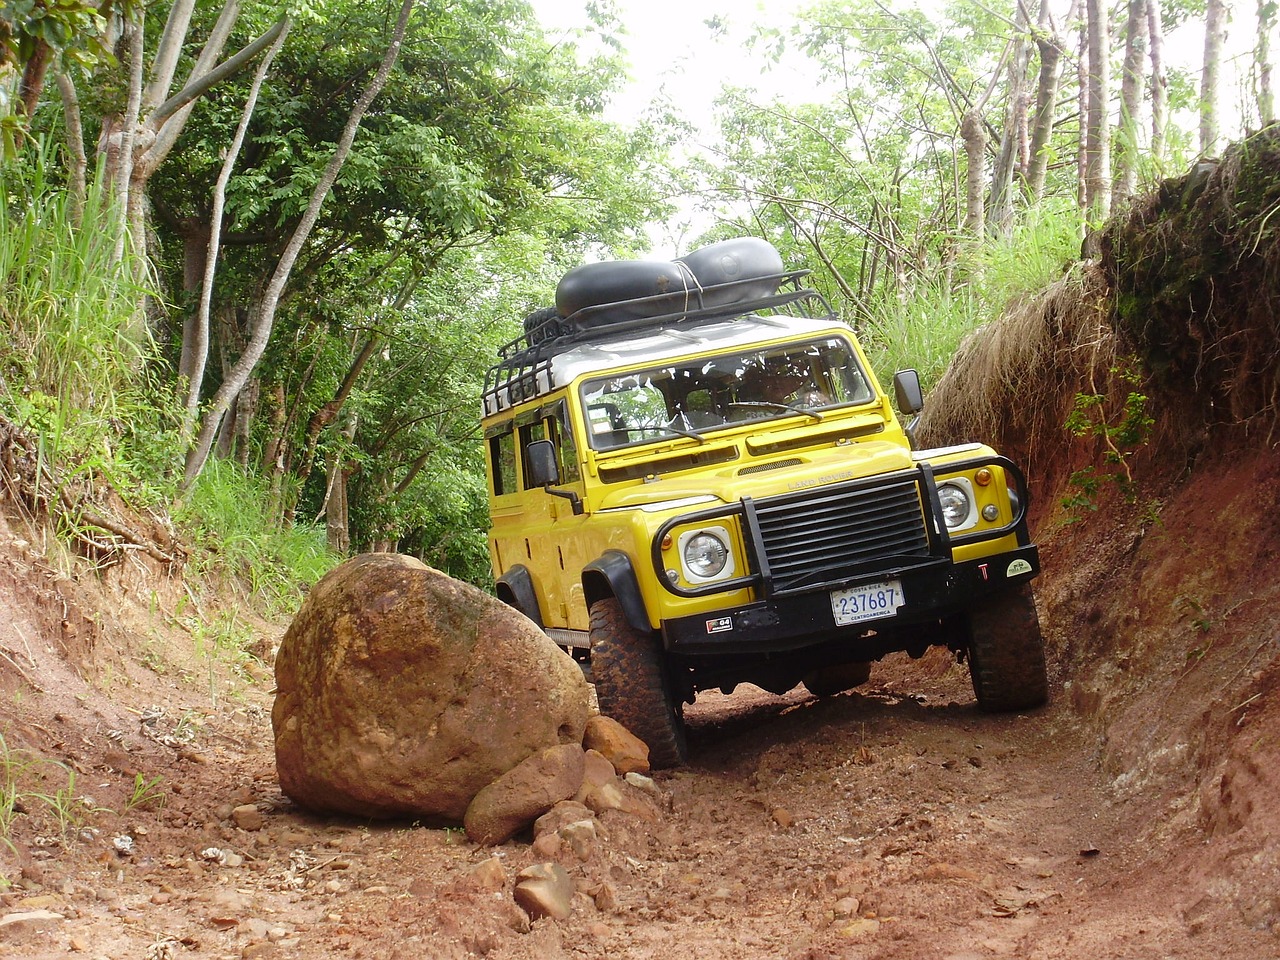 Yellow Land Rover avoiding boulder.